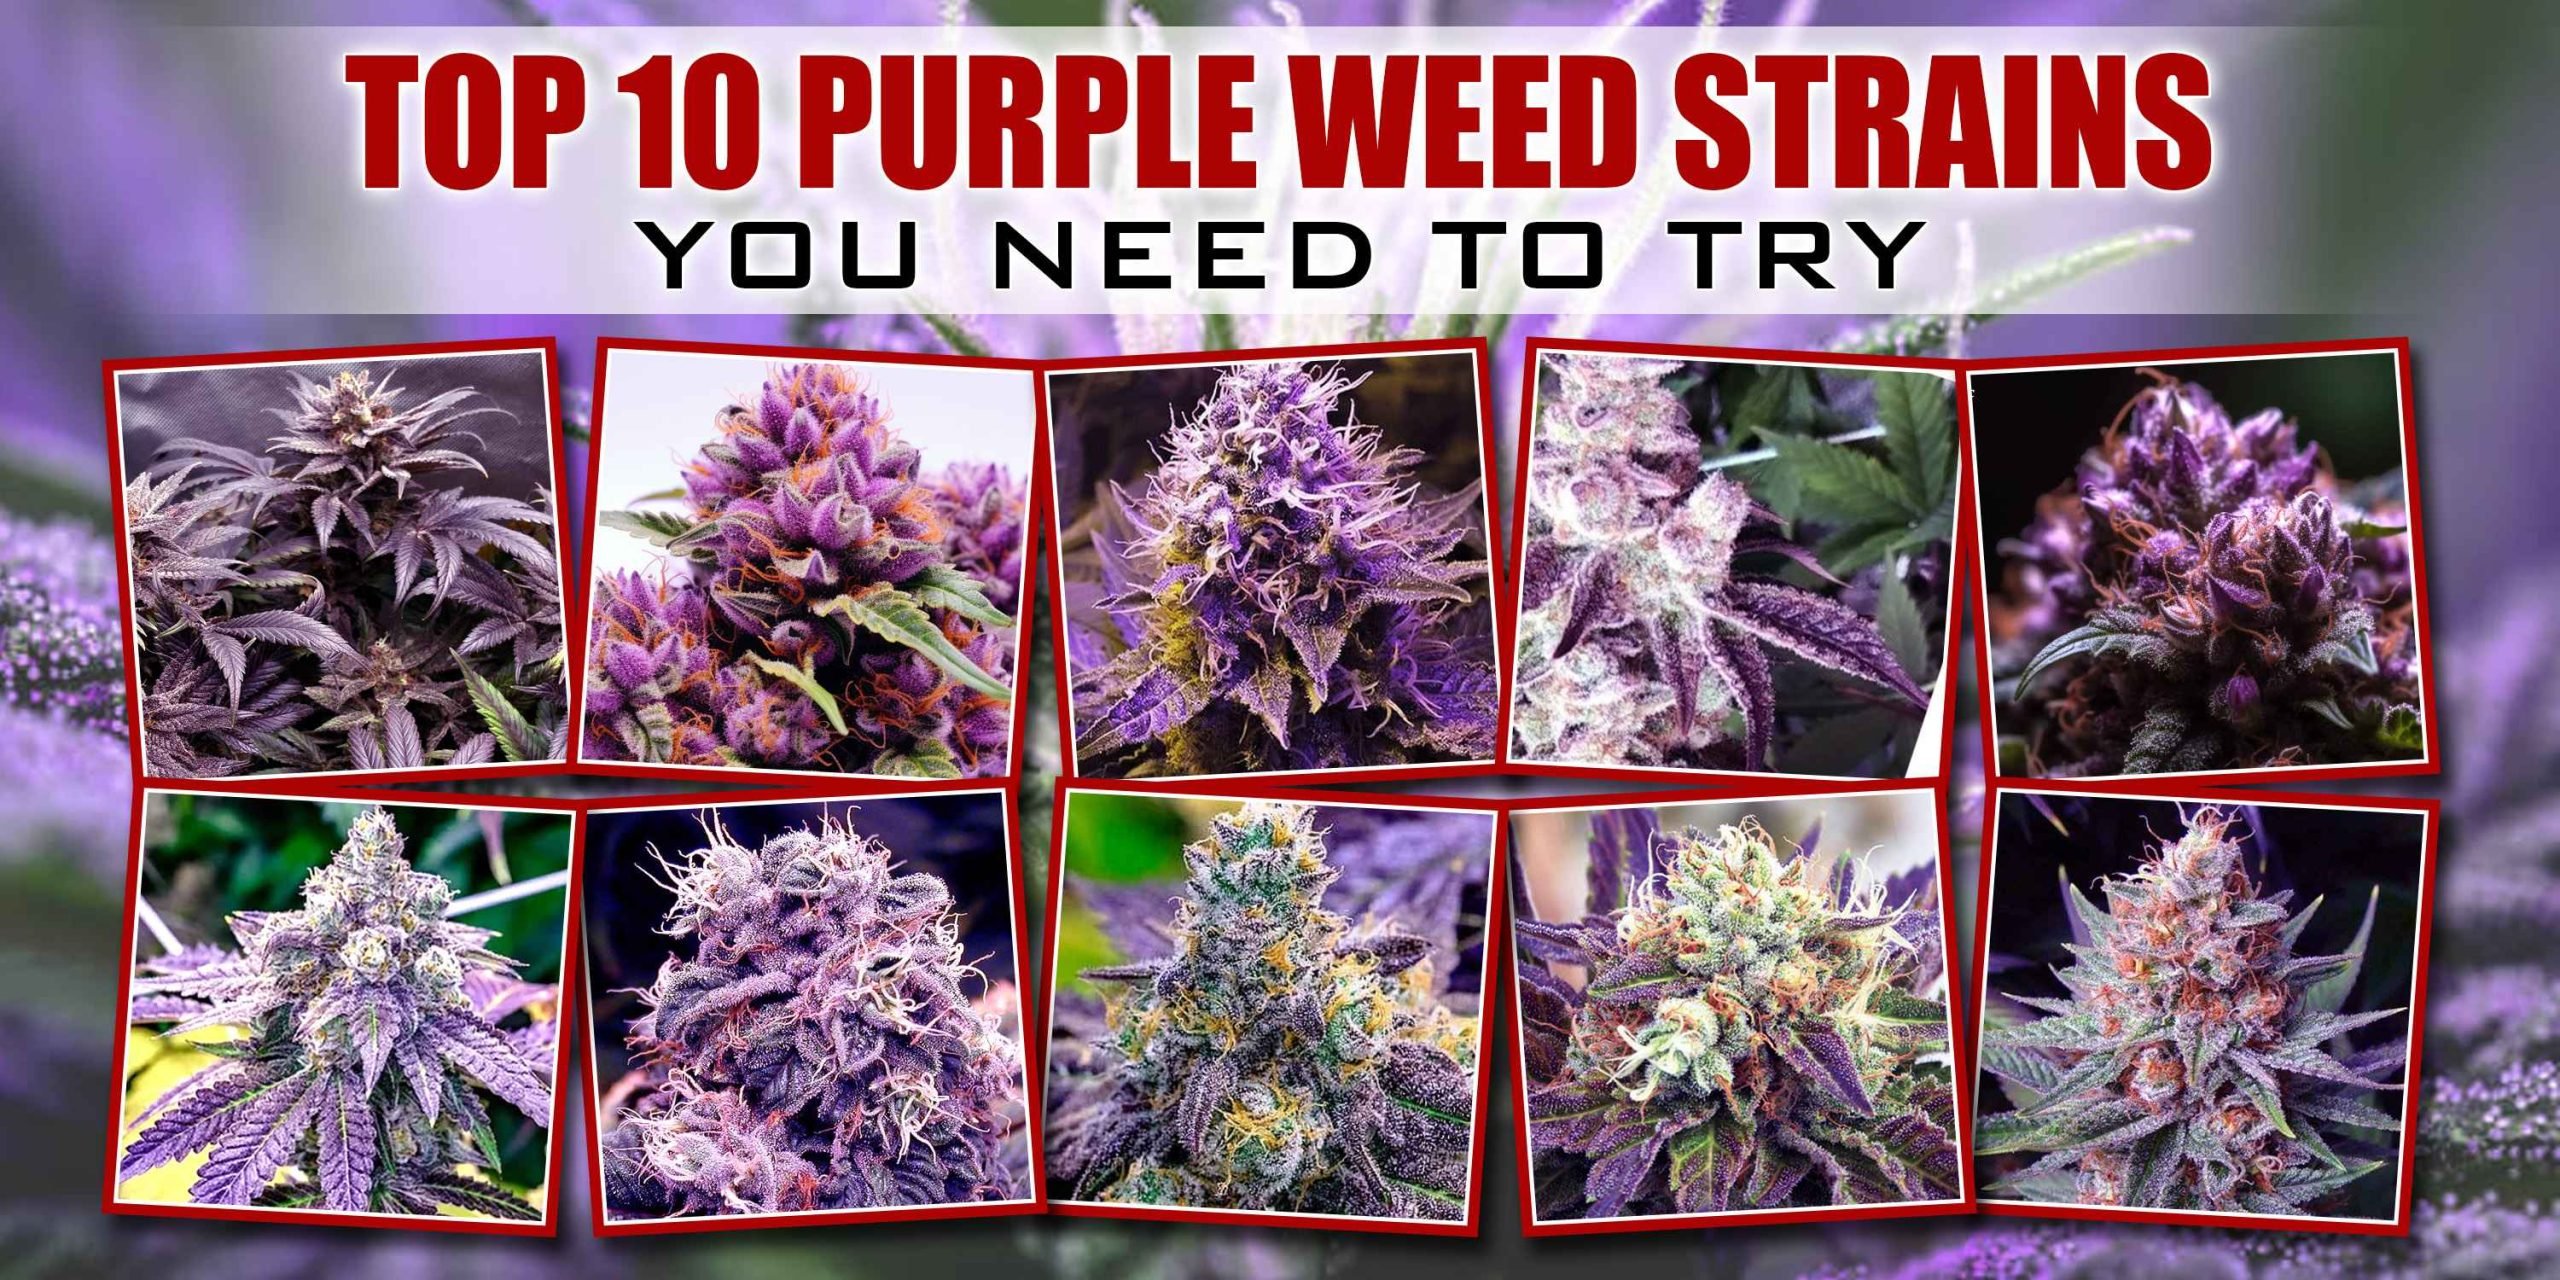 Top 10 Purple Weed Strains